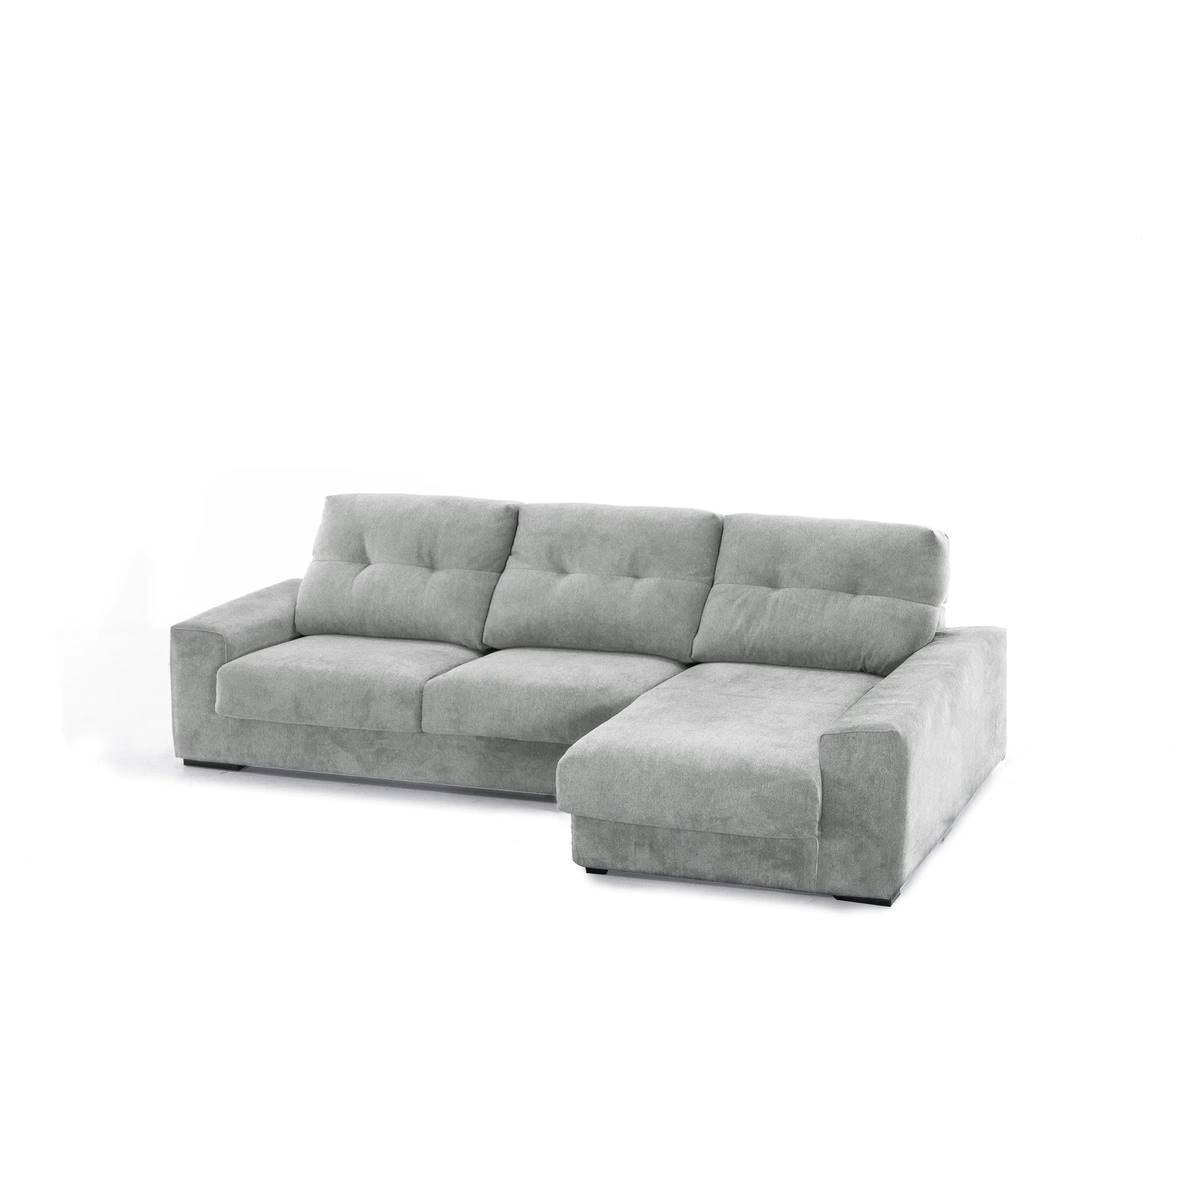 Sofá tapizado con chaise longue derecha modelo Savoy en color gris de El Corte Inglés